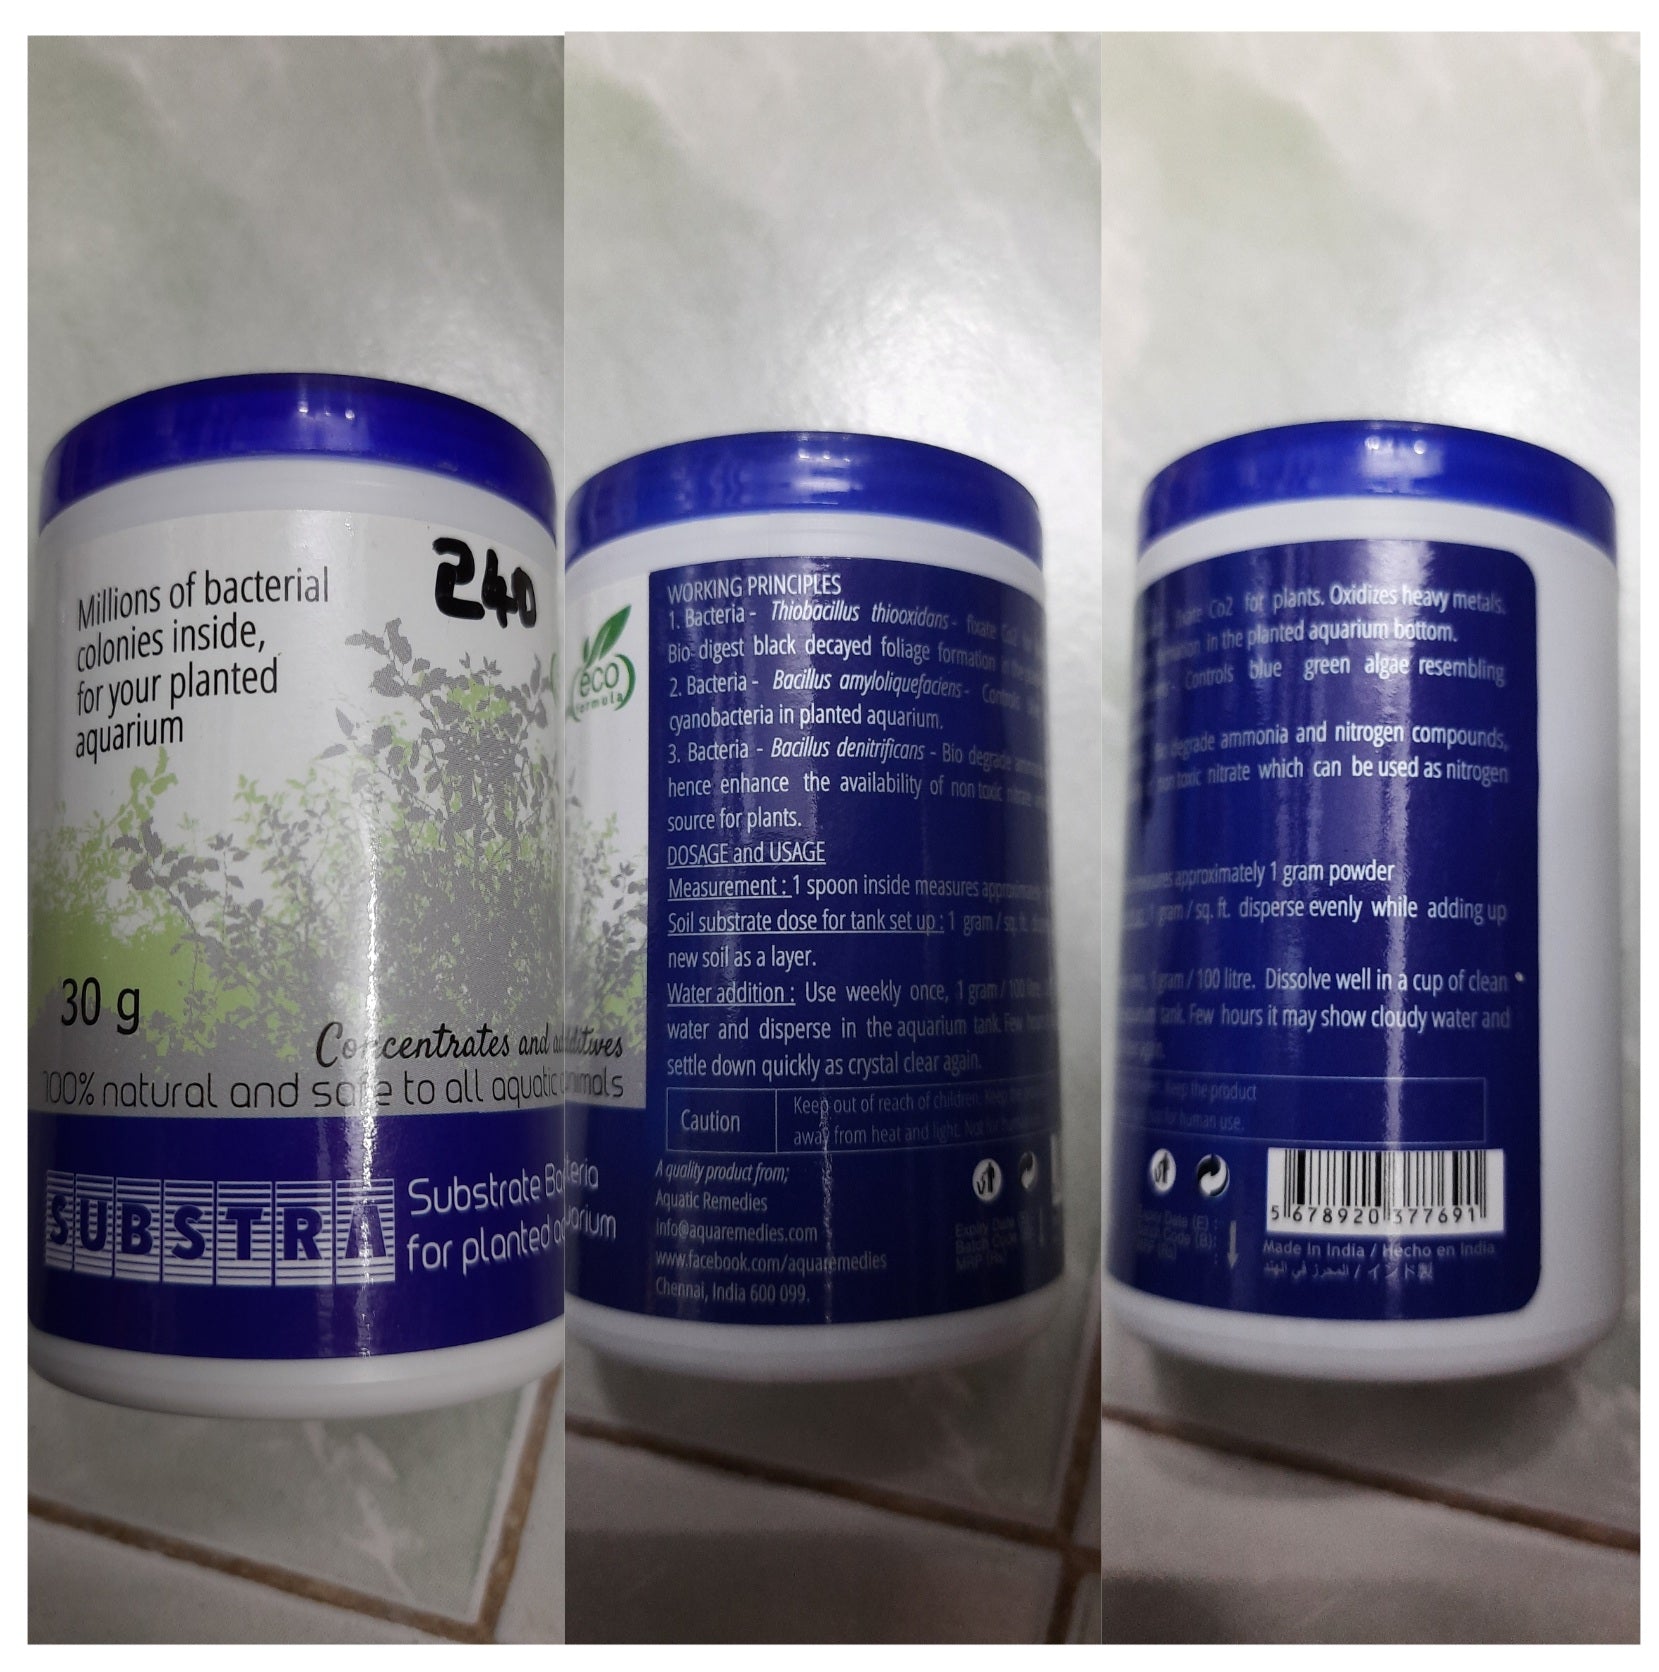 Substra 30 grams - Aquatic Remedies Product